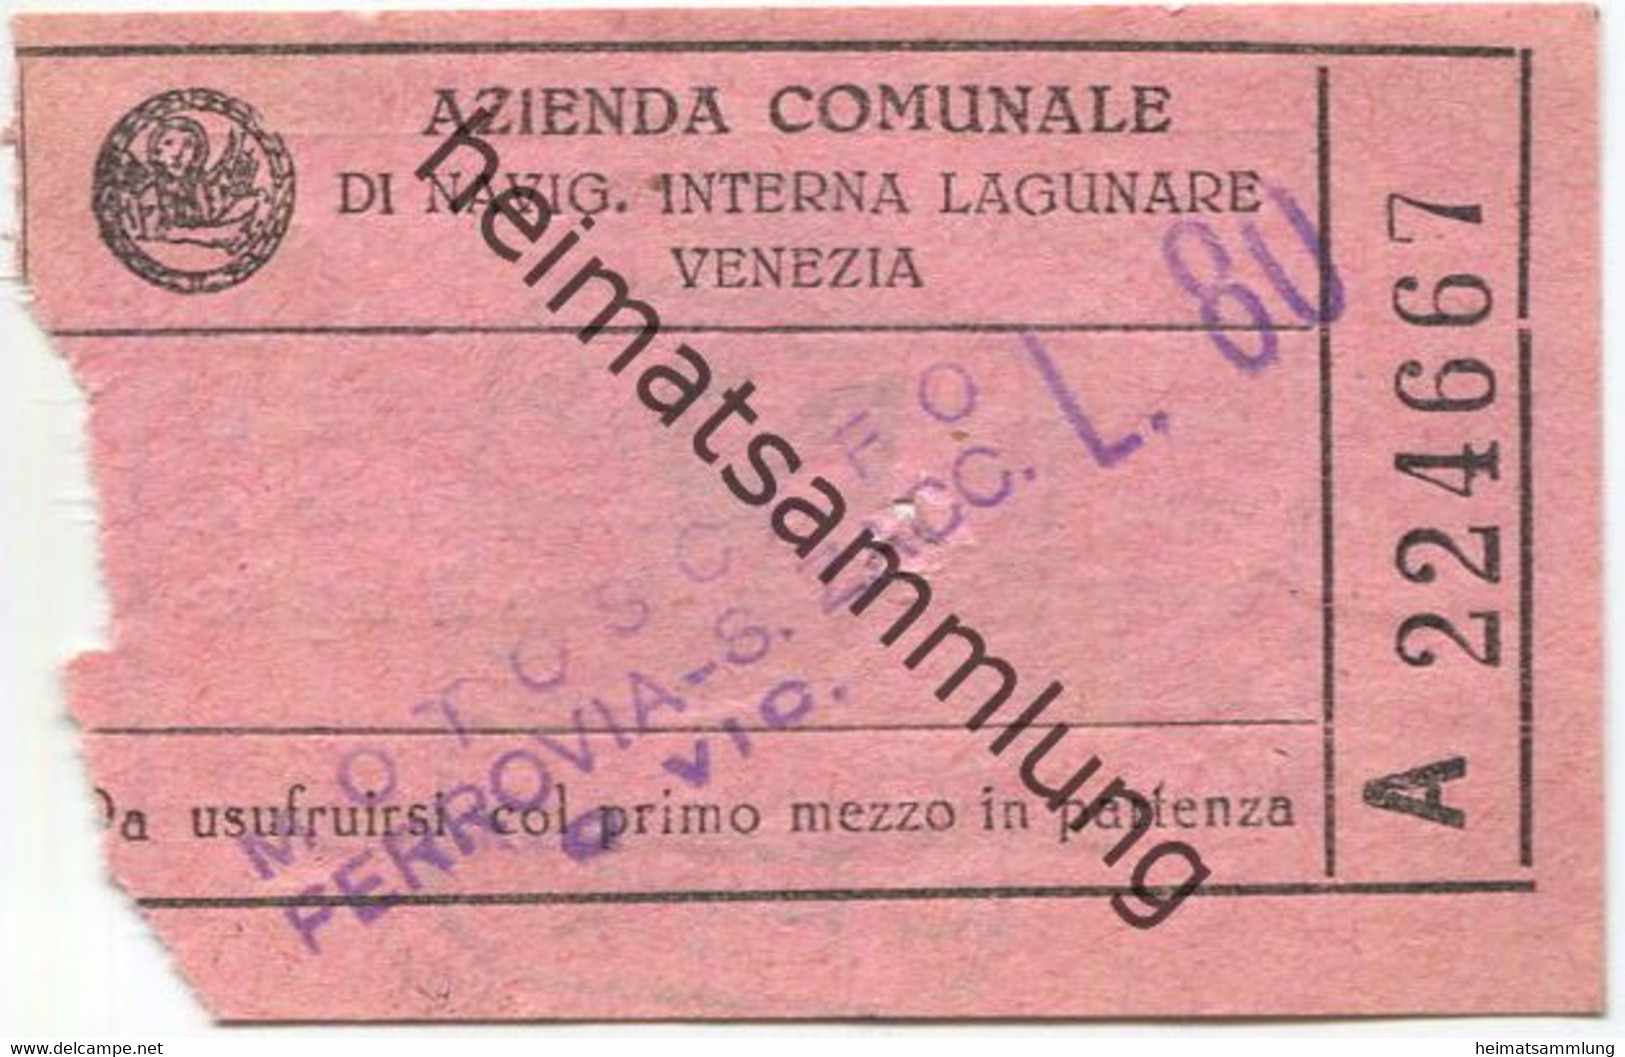 Italien - Azienda Comunale Di Navig. Interna Lagunare Venezia - Motoscafo Ferrovia-S.Zacc. - Fahrschein L.80 - Europa